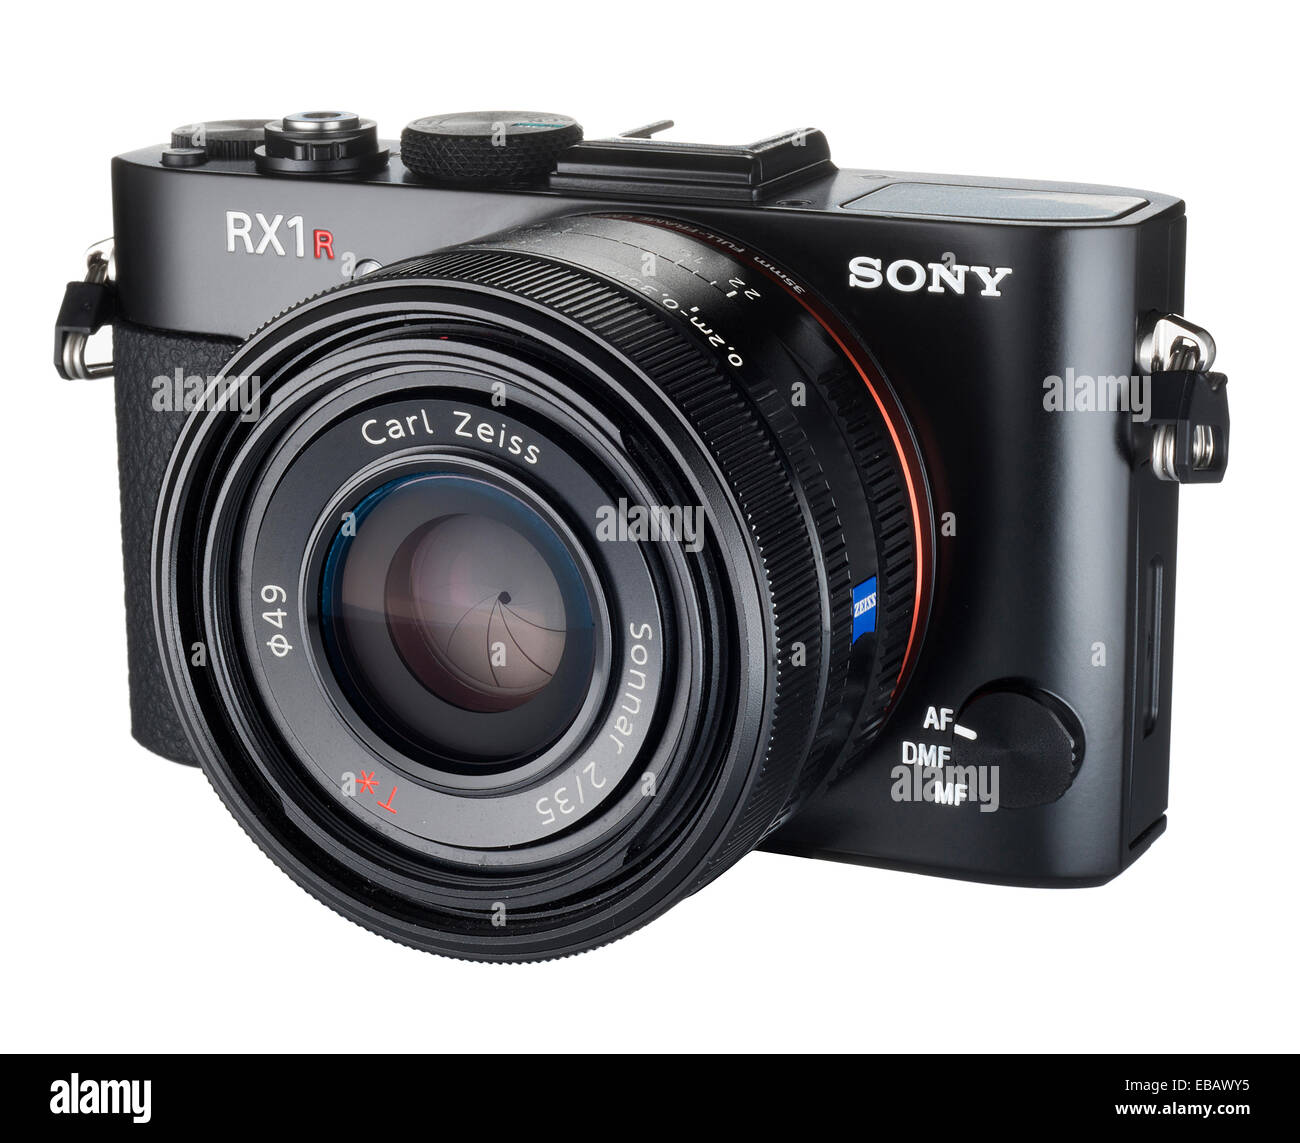 Sony RX1R fotocamera digitale compatta con 35mm sensore CMOS e Carl Zeiss  Foto stock - Alamy